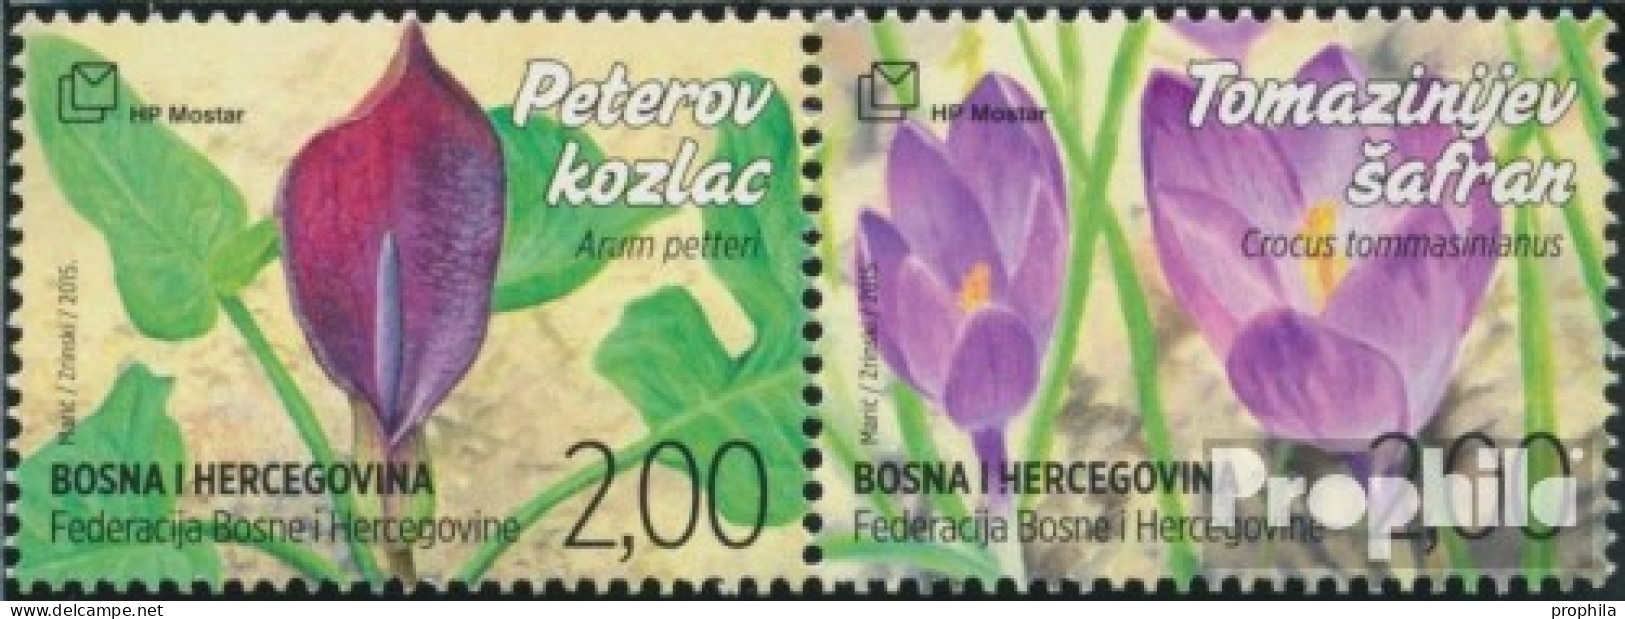 Bosnien - Kroat. Post Mostar 419-420 Paar (kompl.Ausg.) Postfrisch 2015 Flora - Bosnia And Herzegovina